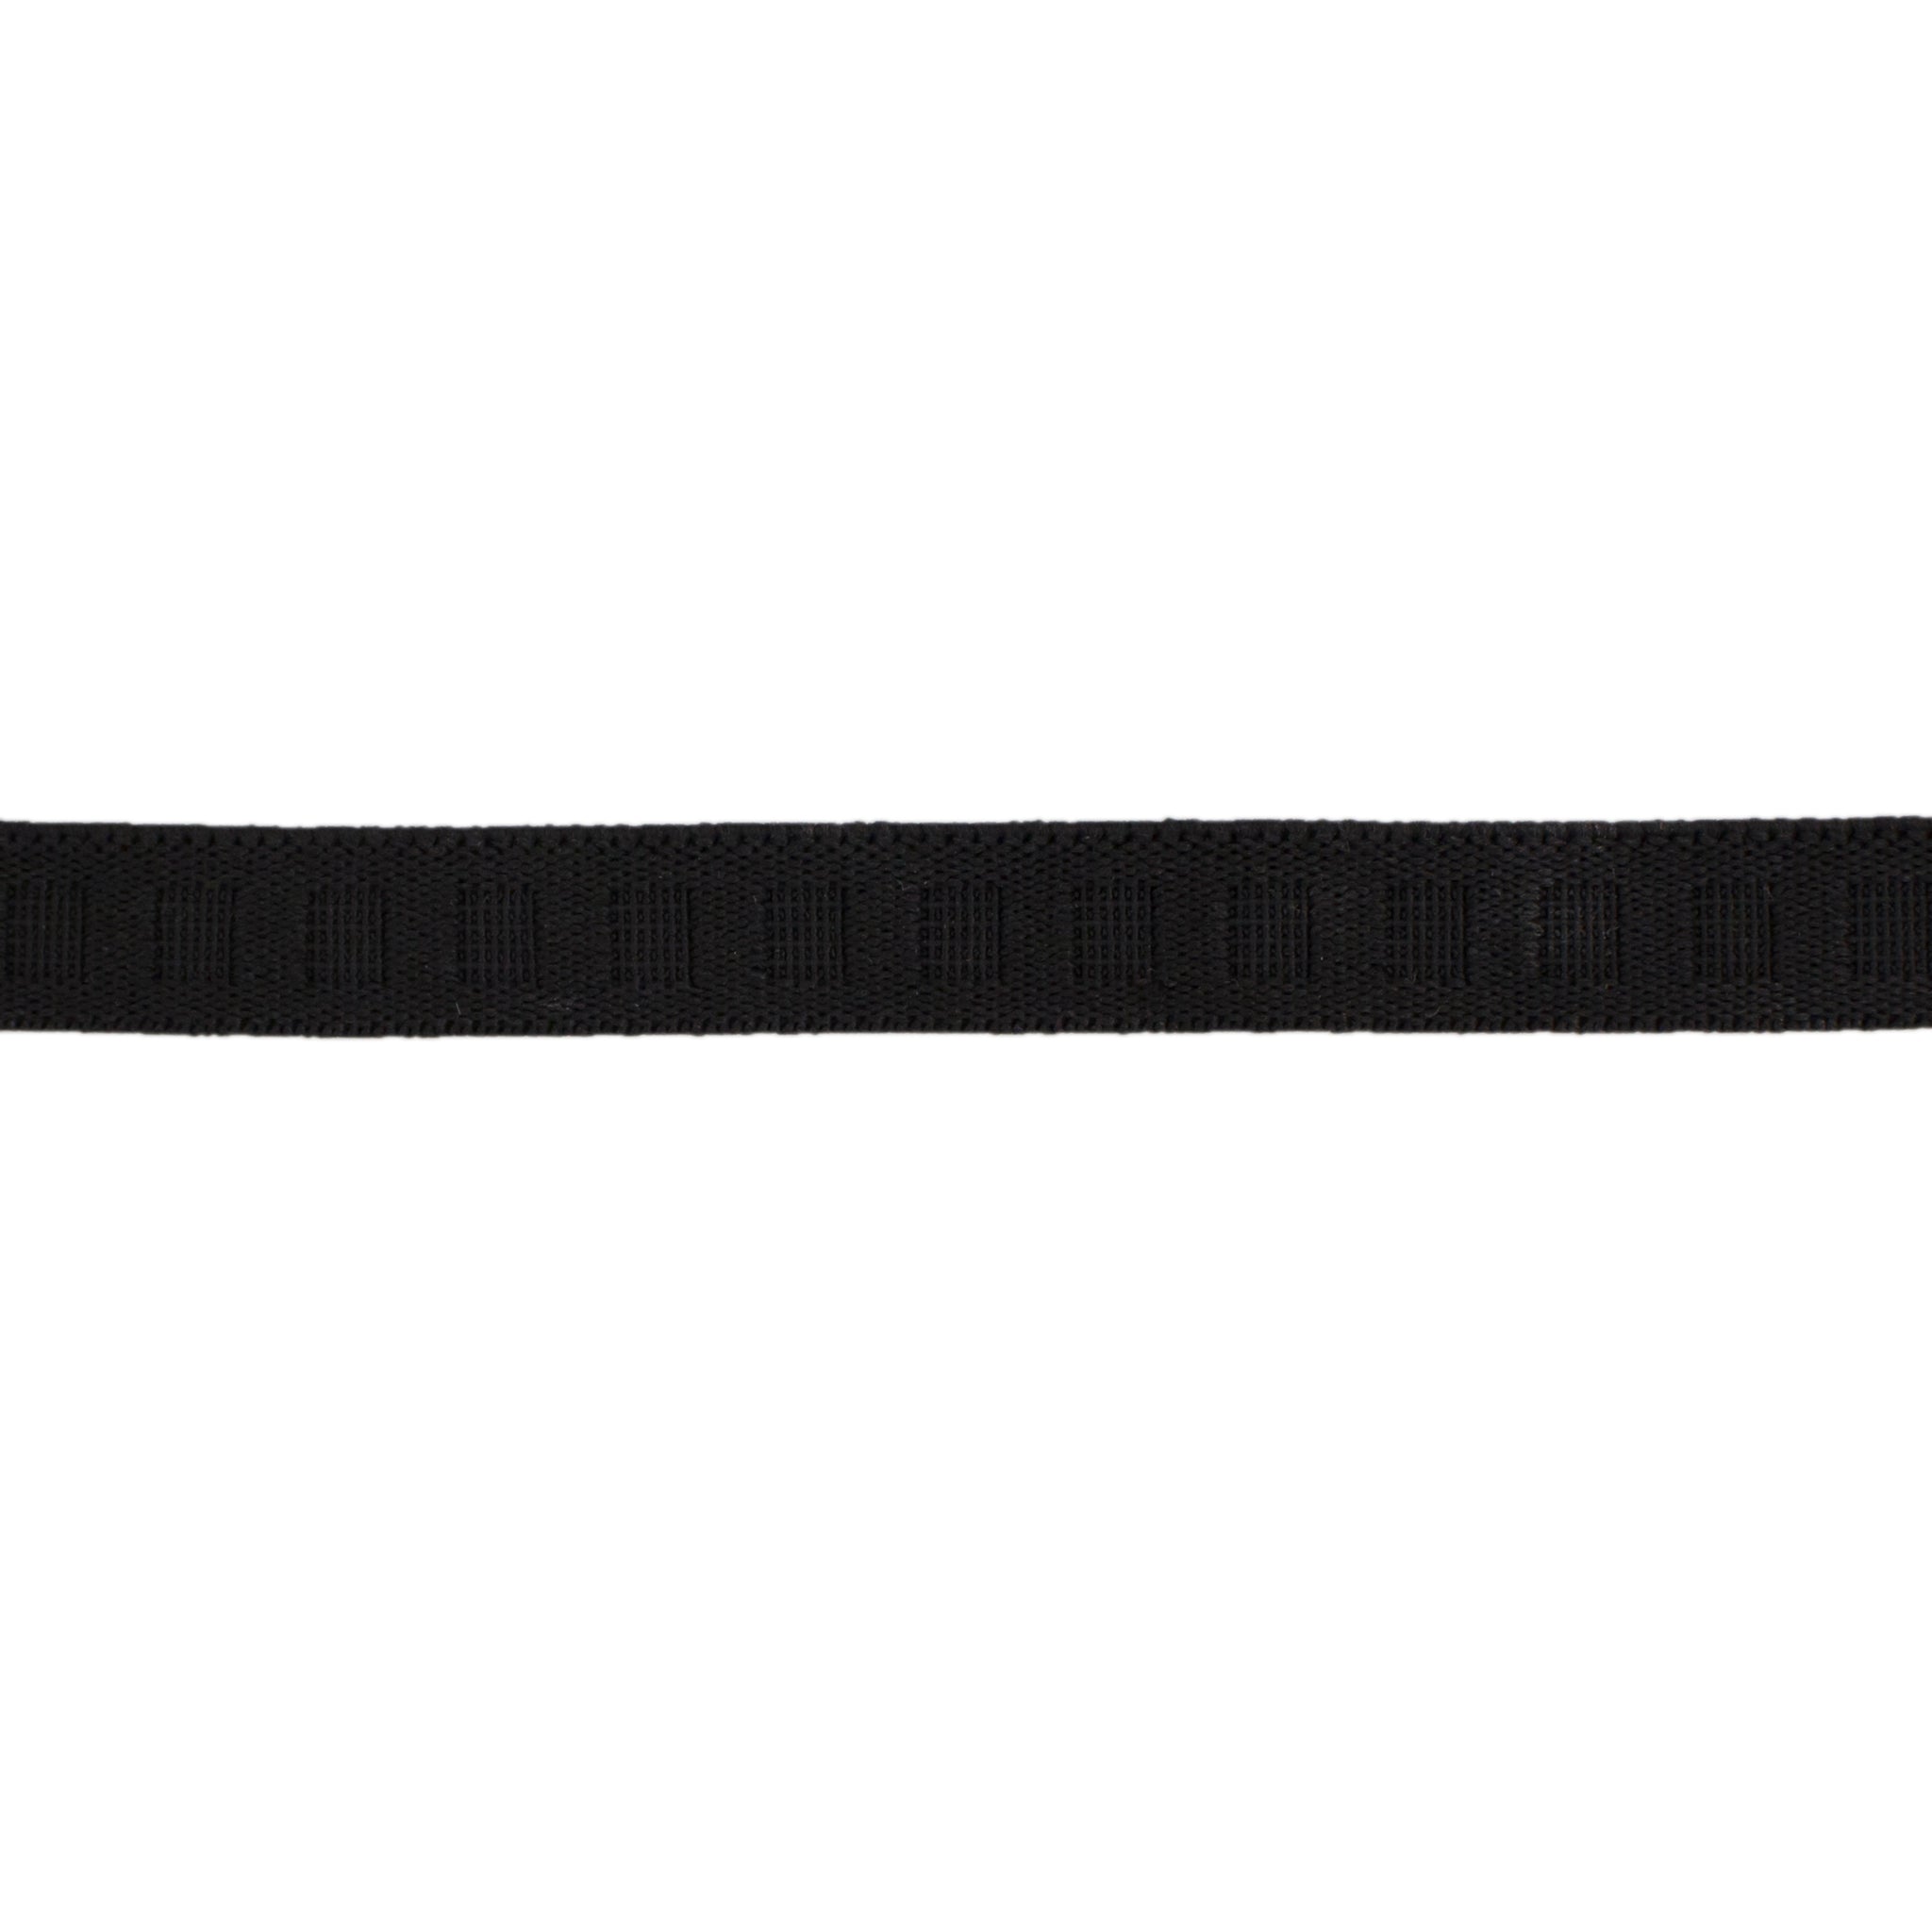 ELASTIC STRAP, Elastic straps designed for the LEVERLOCK FIL